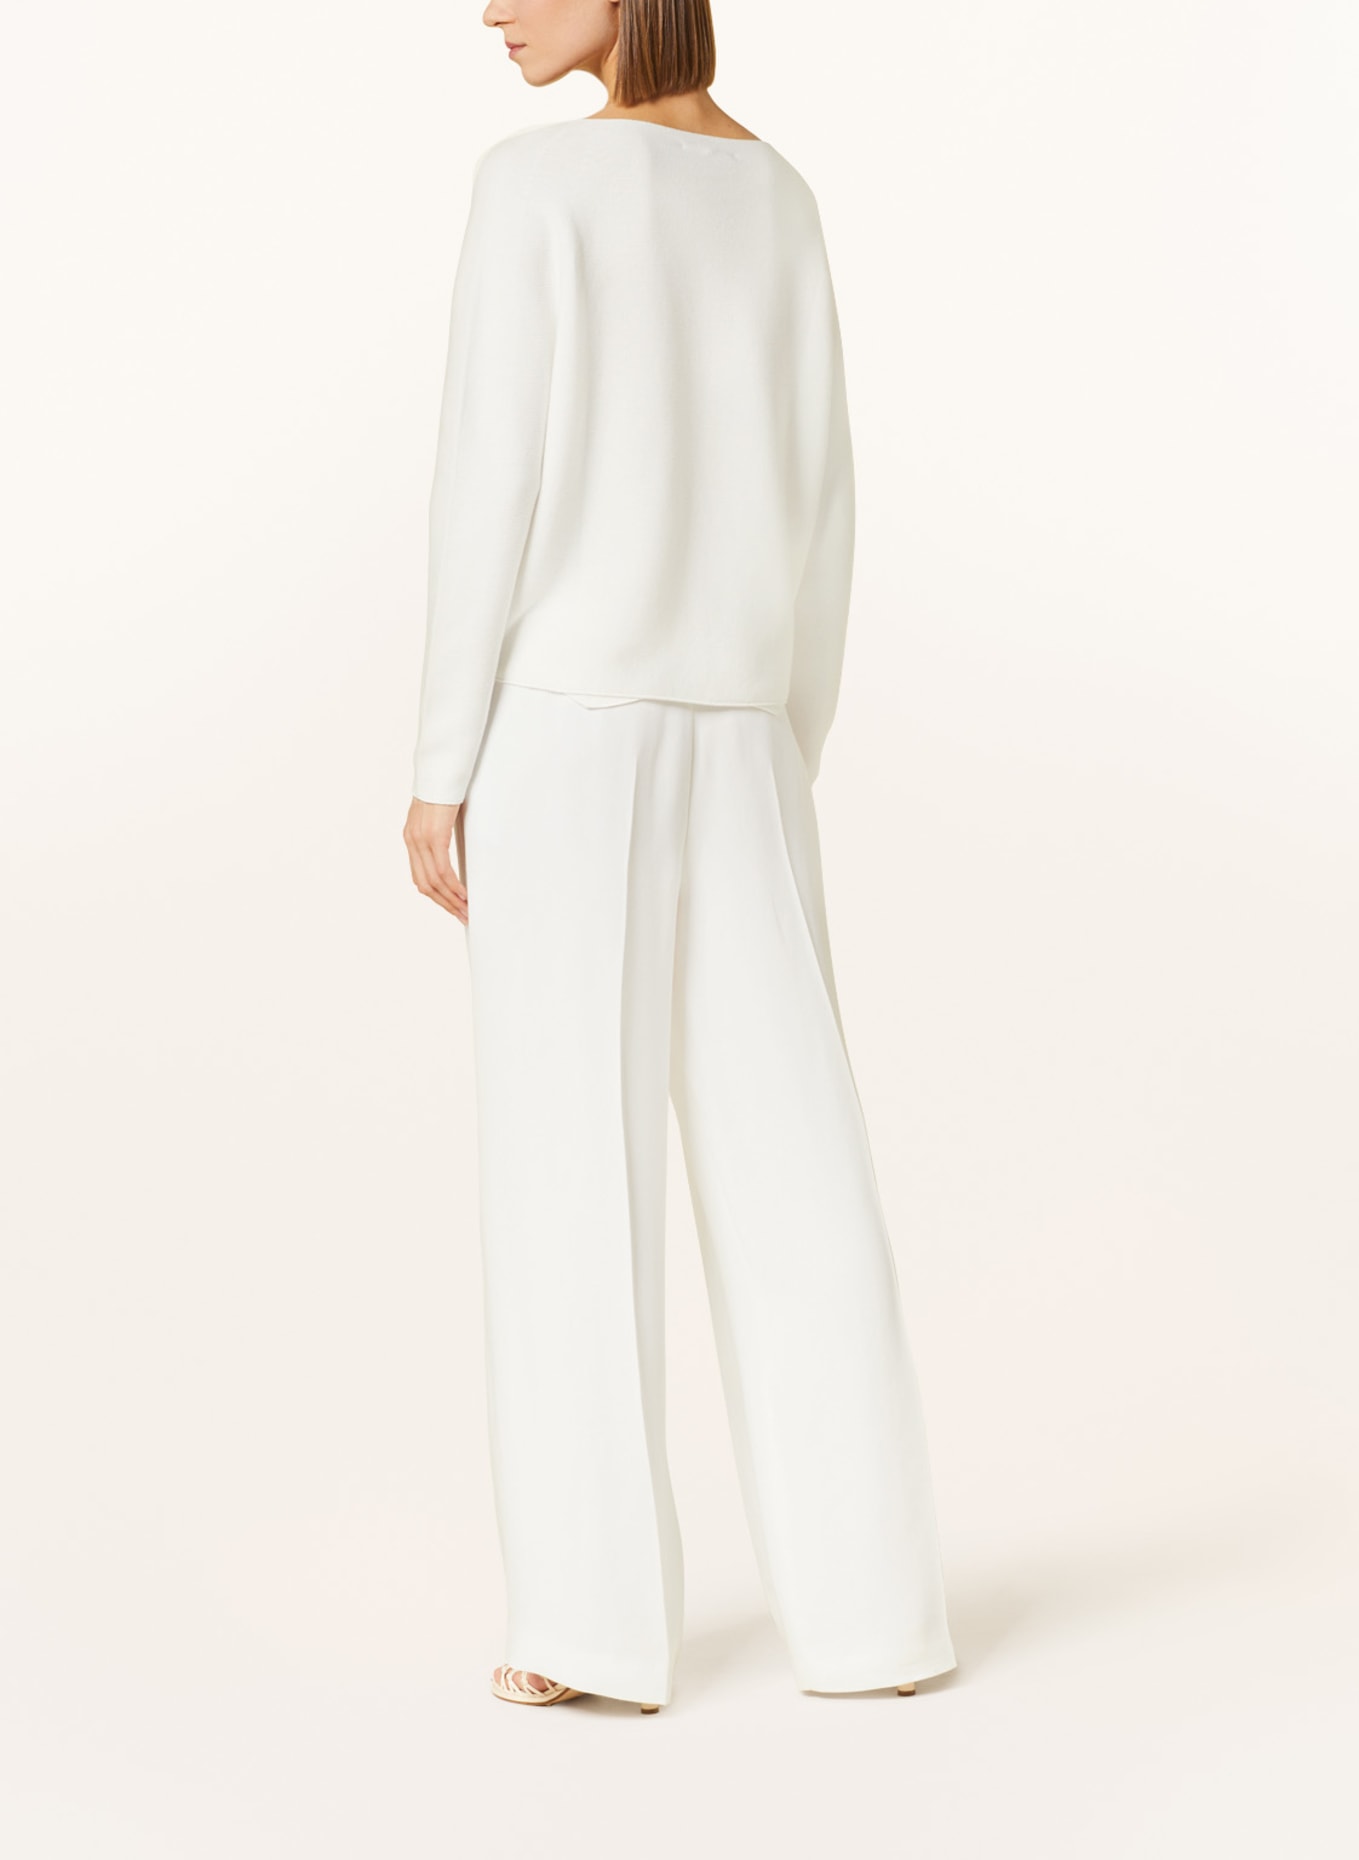 LUISA CERANO Sweater, Color: WHITE (Image 3)